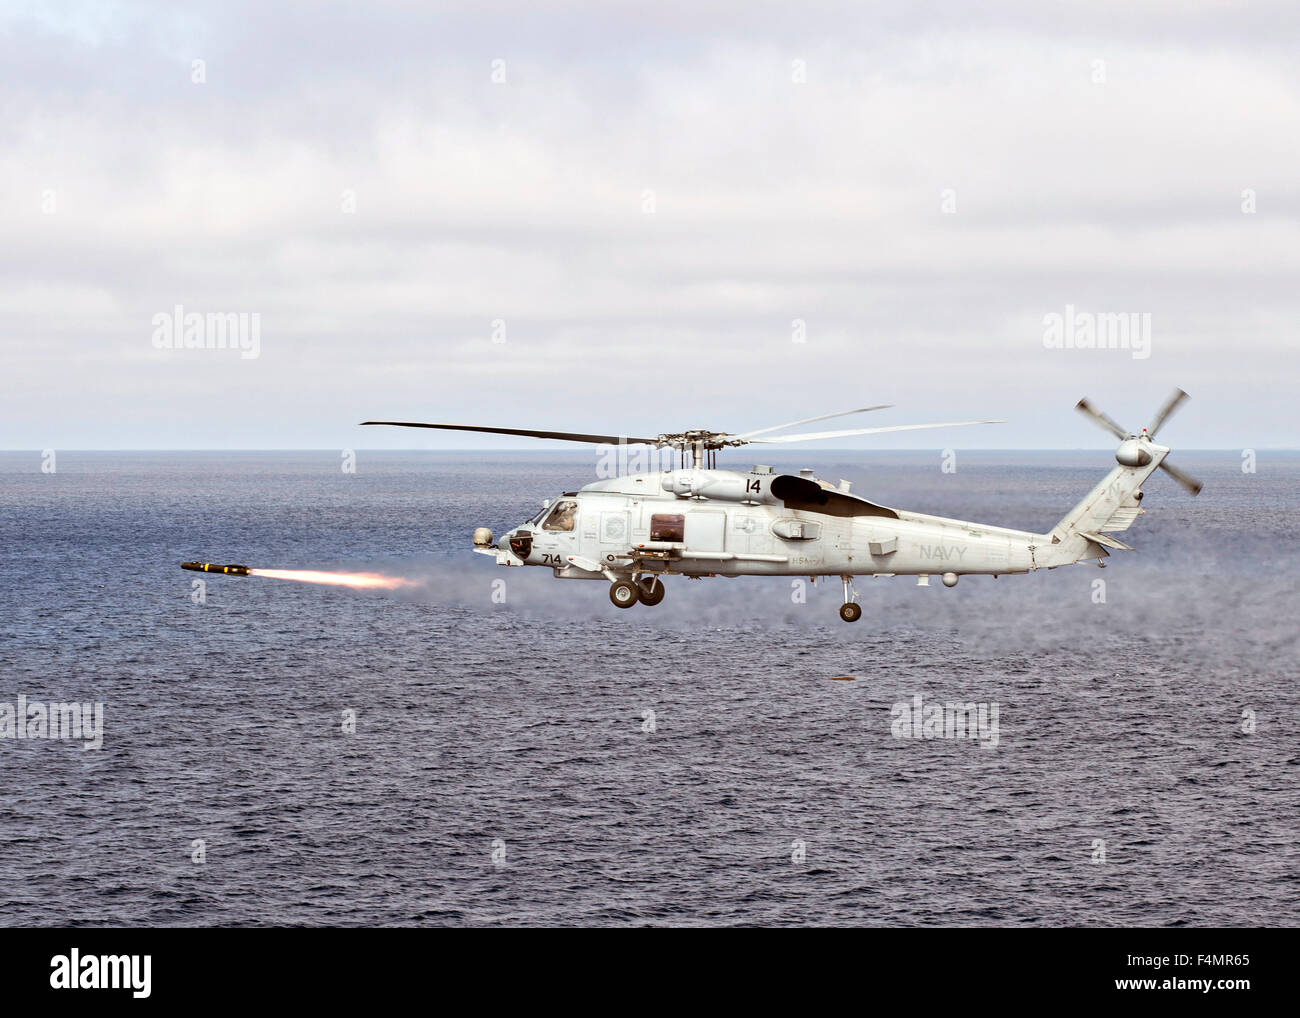 US Navy MH-60R Sea Hawk helicóptero dispara un misil AGM-114 Hellfire durante un ejercicio de entrenamiento el 14 de octubre de 2015 en el Océano Pacífico. Foto de stock